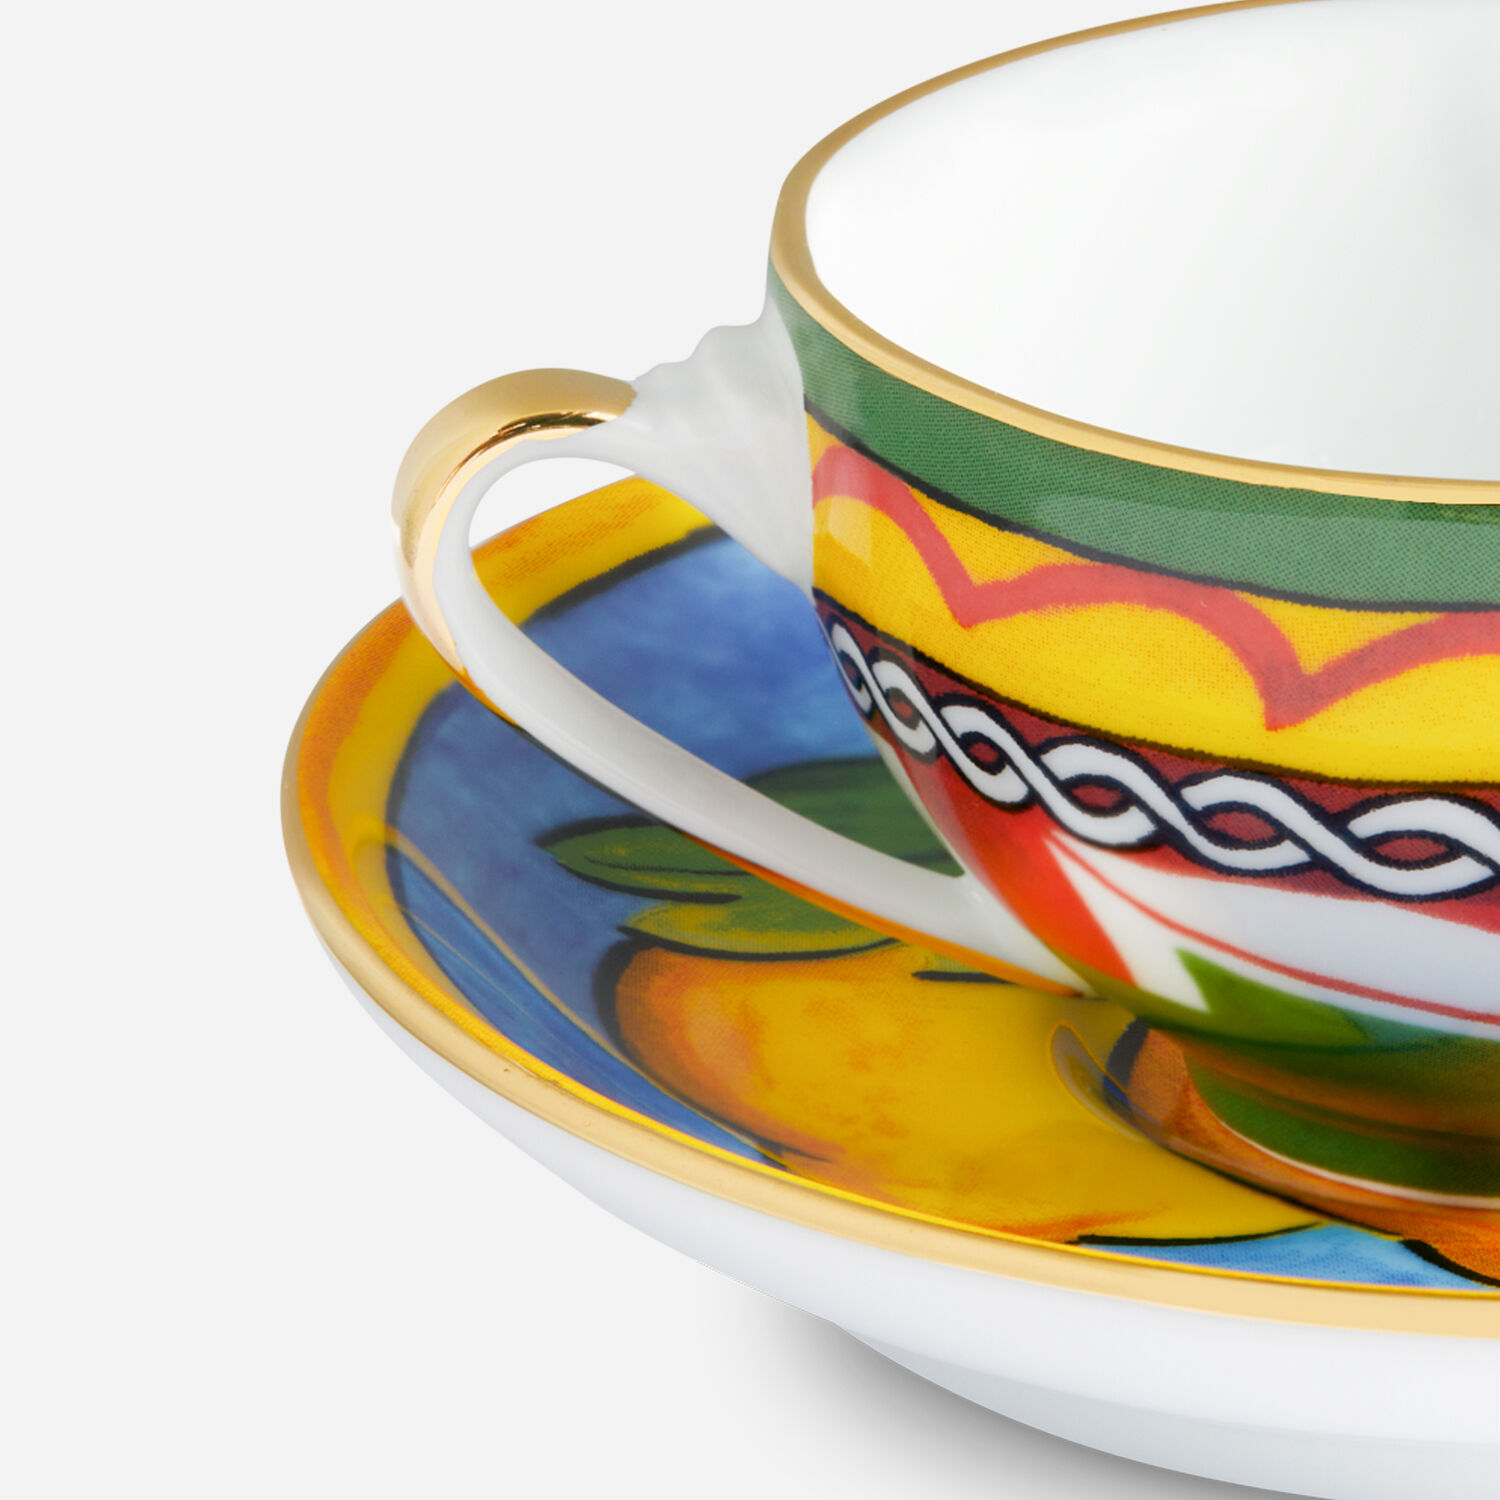 Fancy Glaze Ceramic Latte Teacup 150ml Espresso Coffee Mug Cups Tea Cup Mugs  Dolce Gosto Pod Nespresso Capsule Coffee Glass Cup